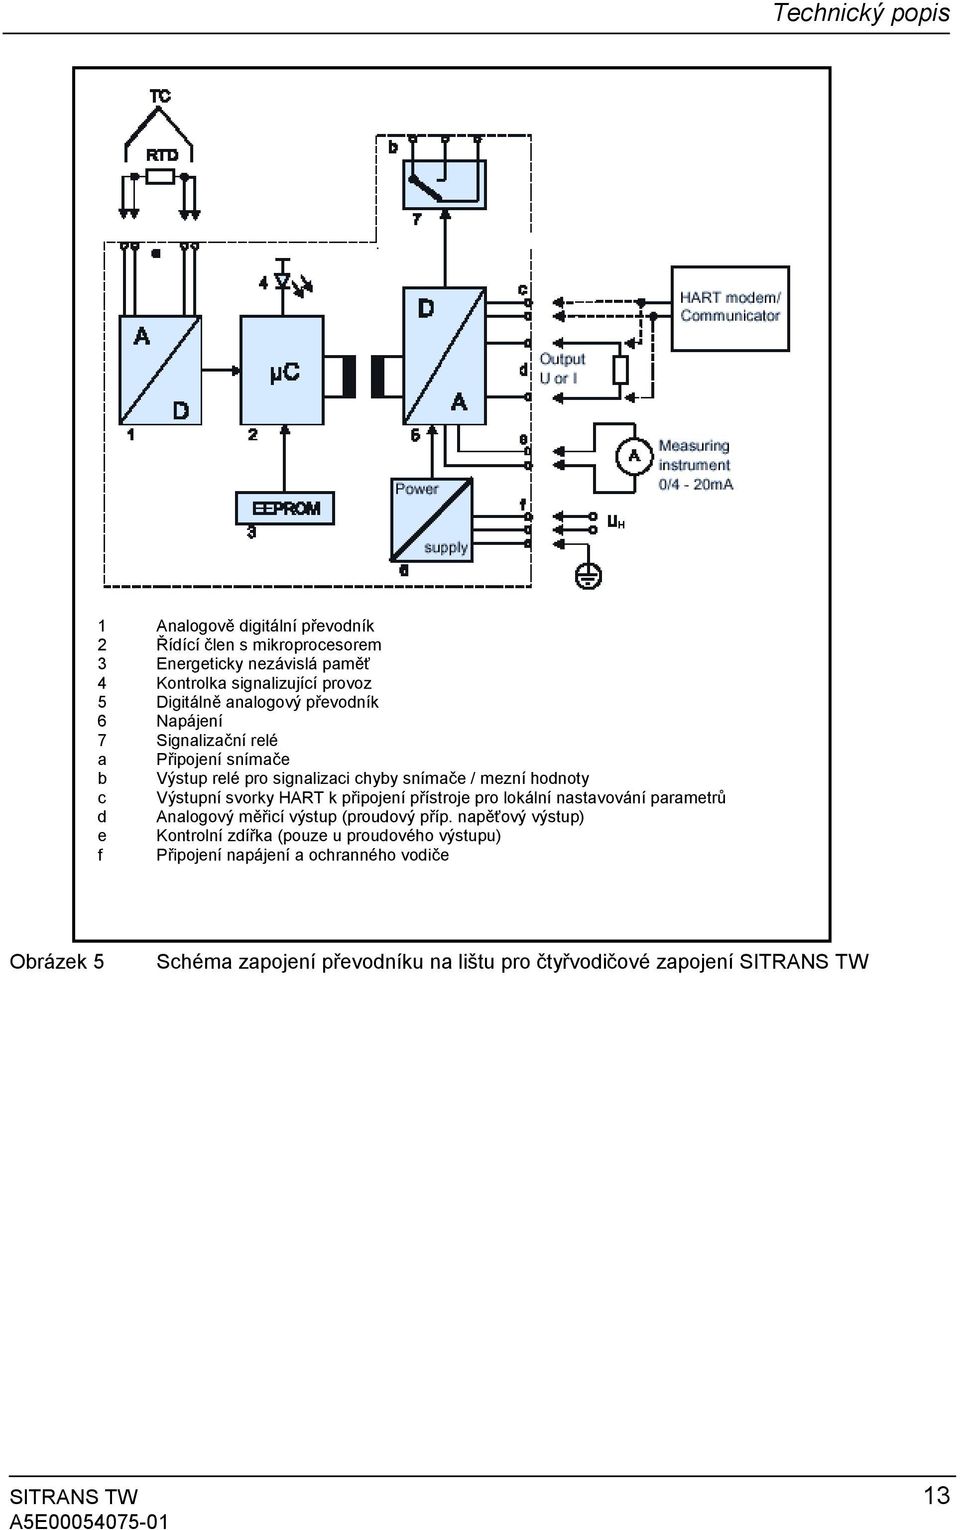 svorky HART k připojení přístroje pro lokální nastavování parametrů d Analogový měřicí výstup (proudový příp.